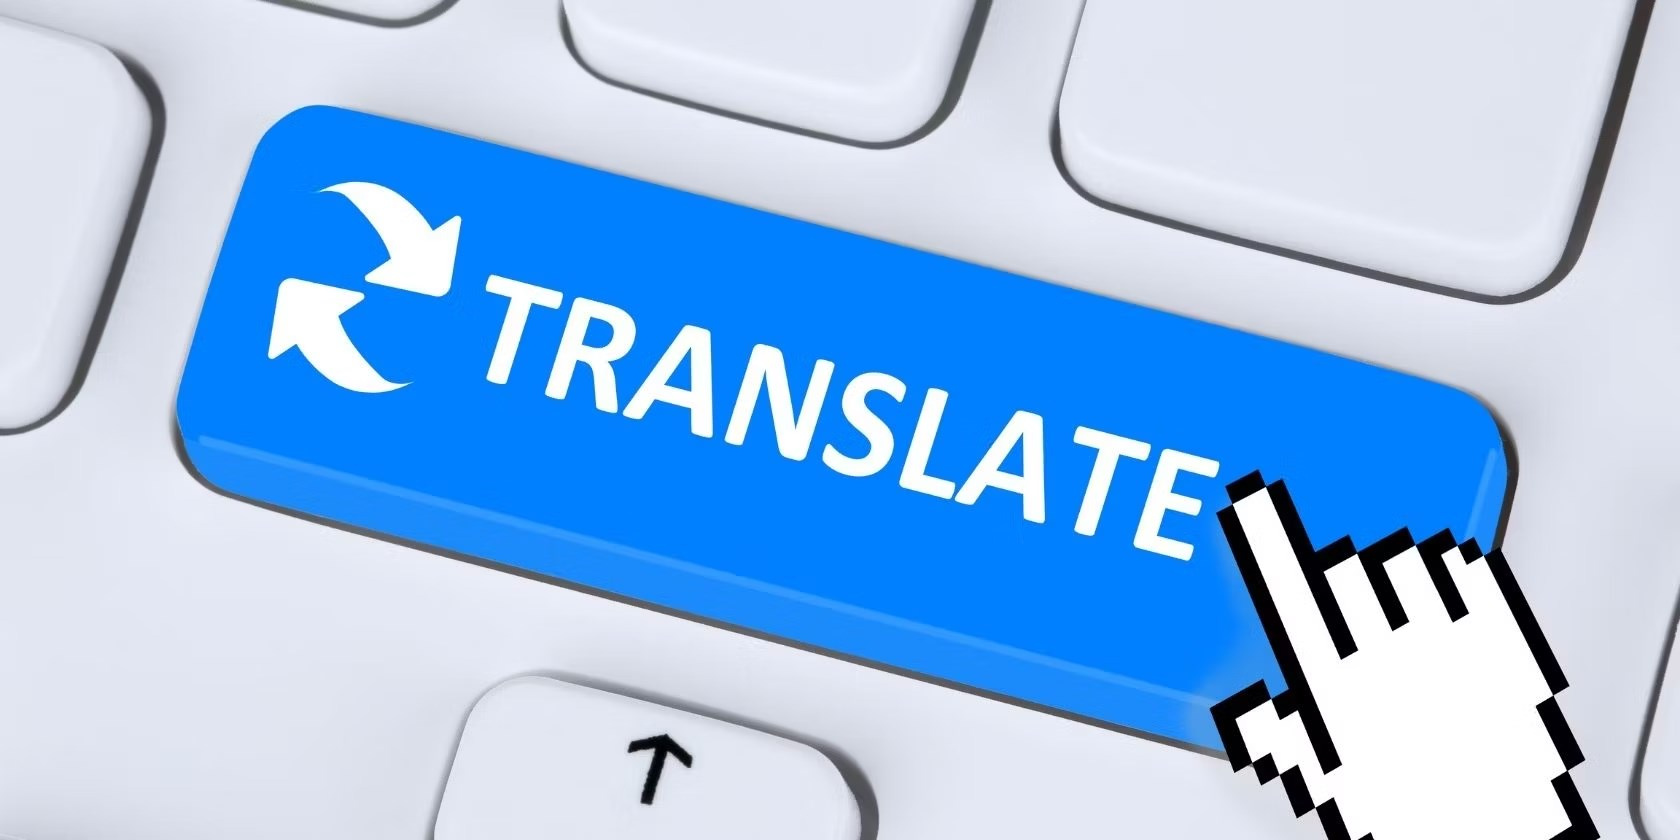 Çeviri yaparak nasıl para kazanılır?